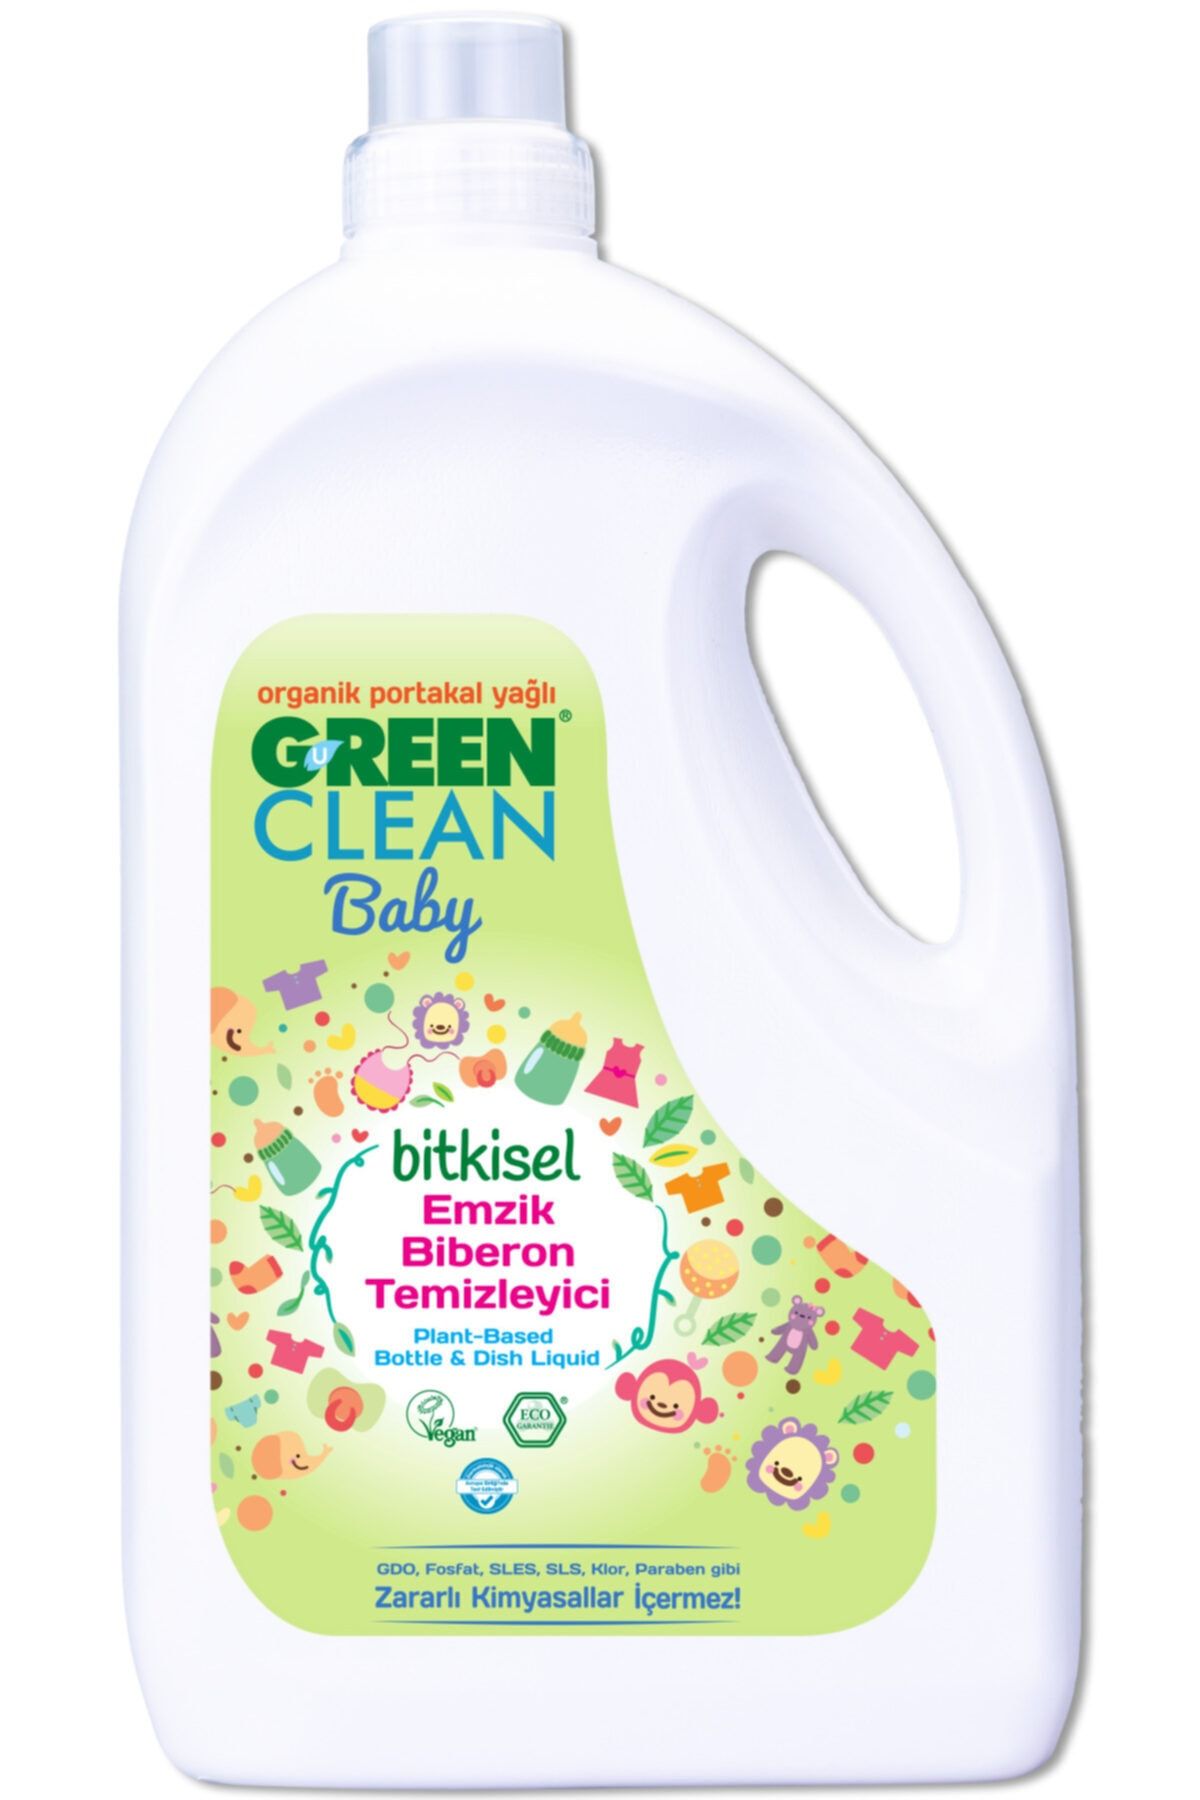 Green Clean Baby Bitkisel Emzik Biberon Temizleyici Organik Portakal Yağlı 2.75 lt